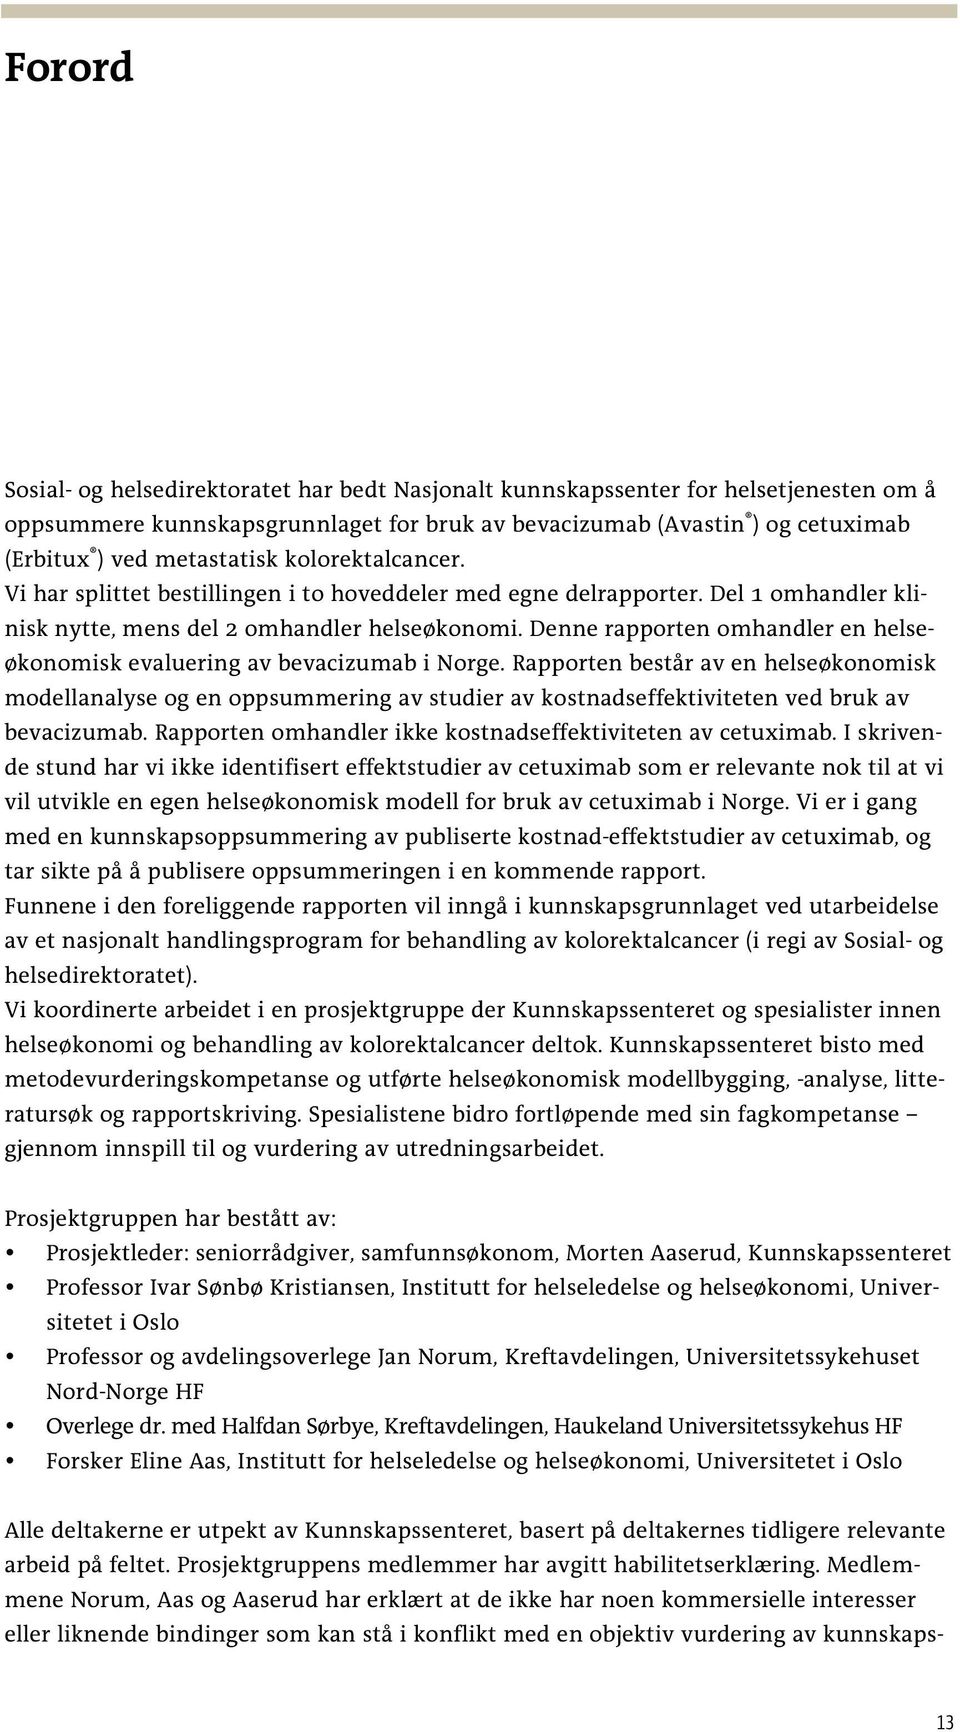 Denne rapporten omhandler en helseøkonomisk evaluering av bevacizumab i Norge.